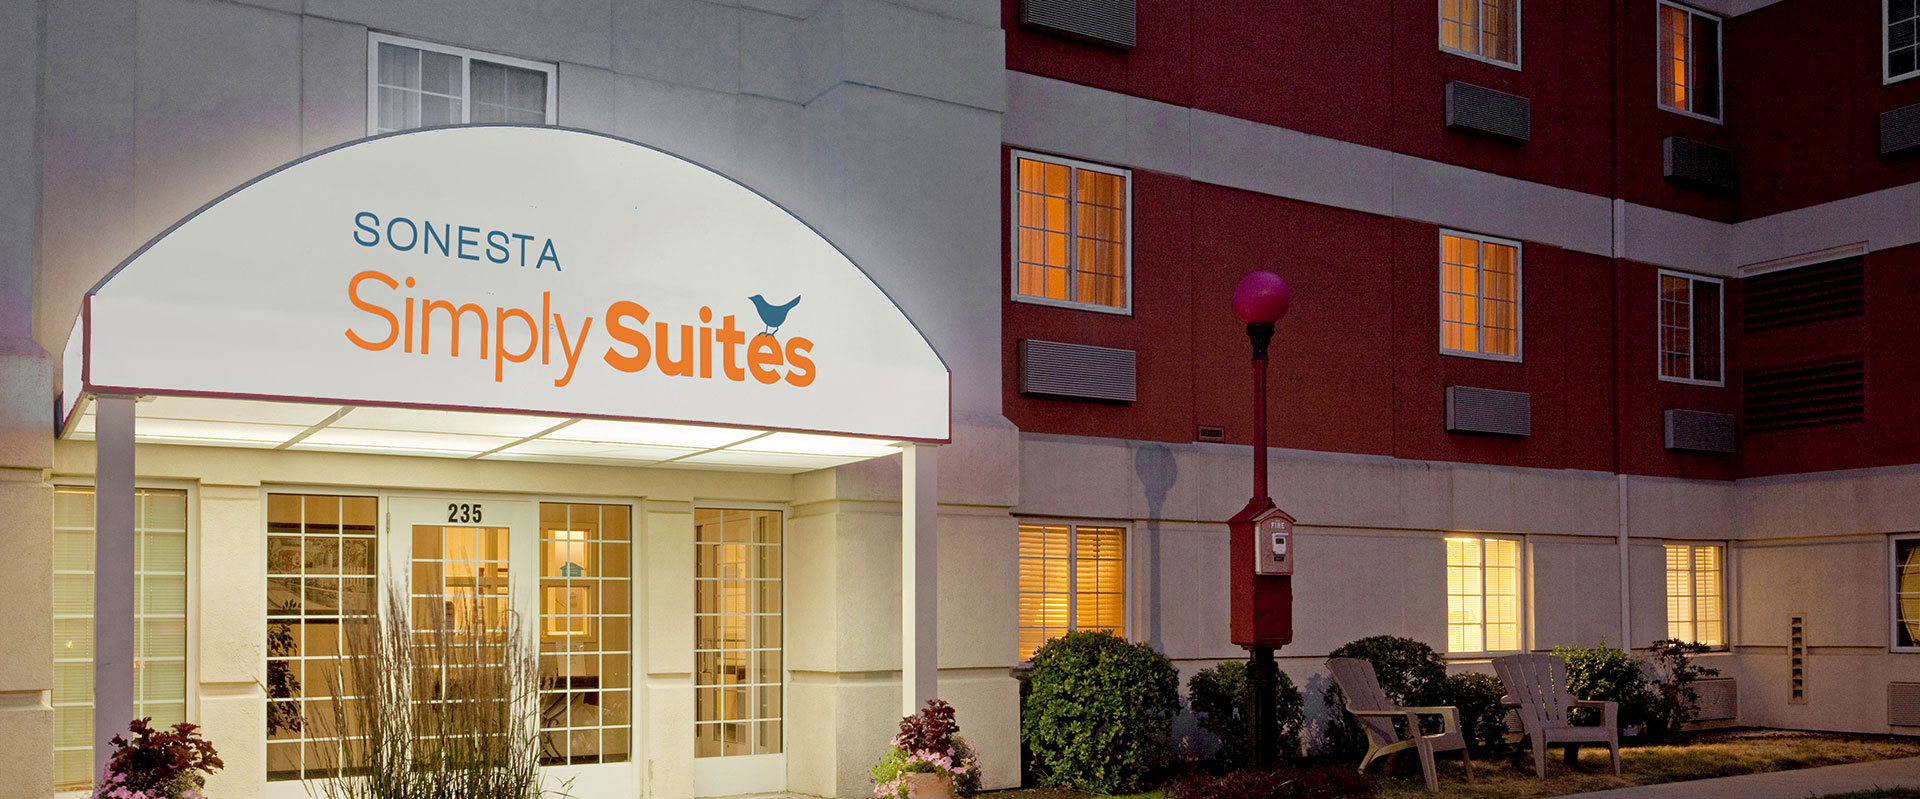 Sonesta Simply Suites Boston Braintree Hotel Exterior Entrance